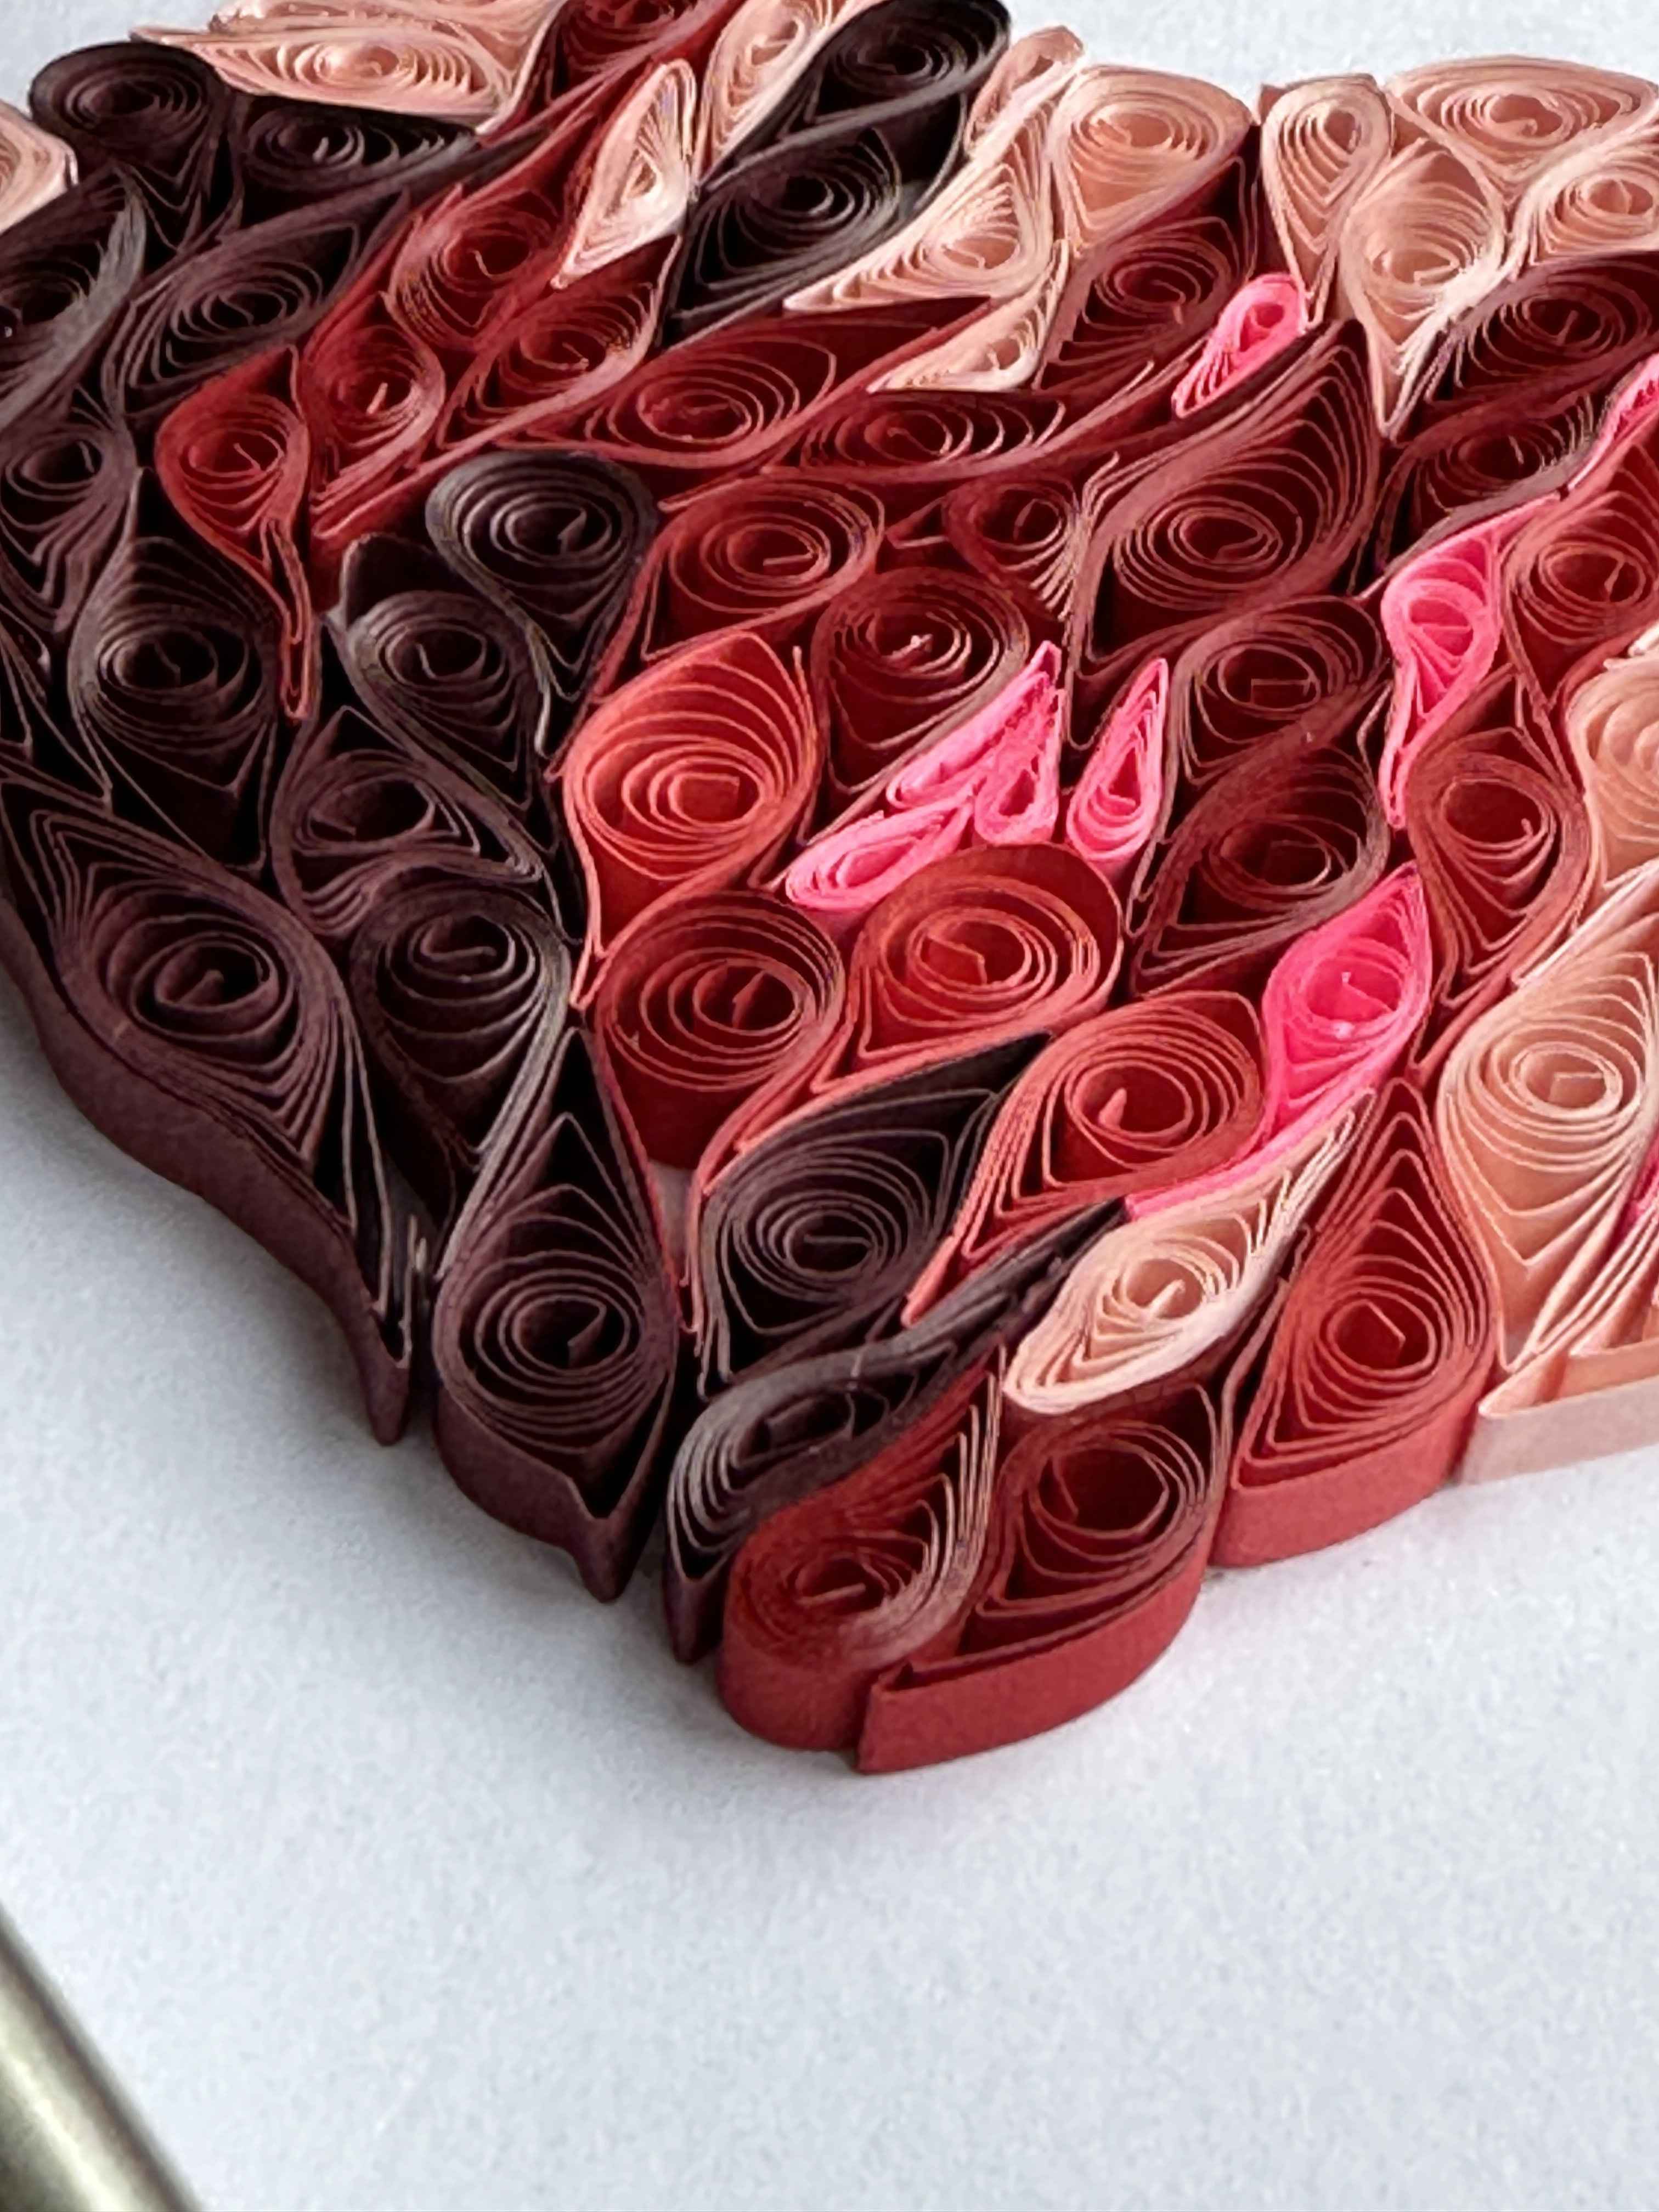 Handmade Quilled Valentine Heart Card - Heart Card - Valentine Card - 